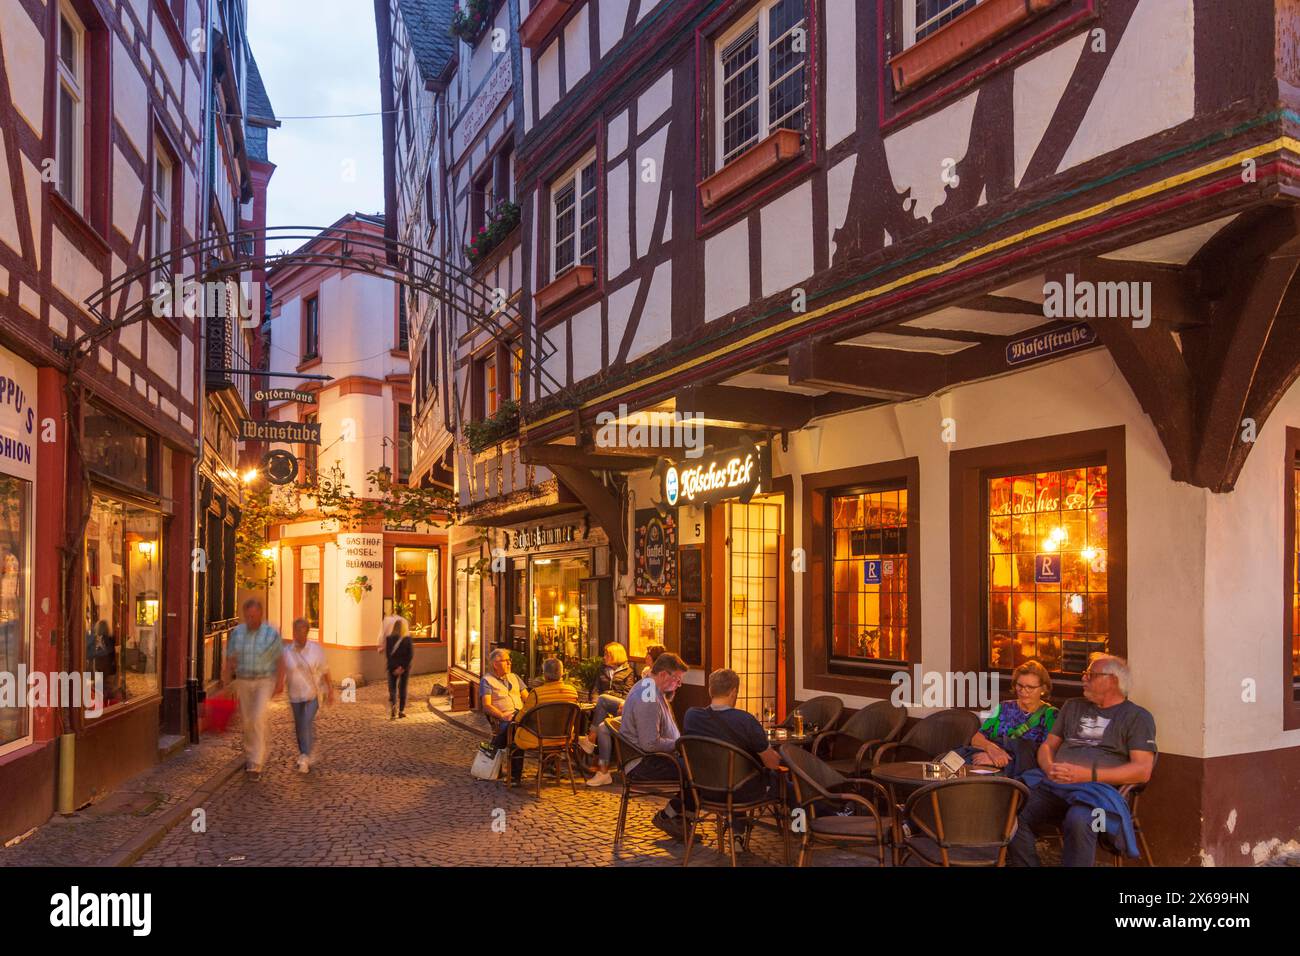 Bernkastel-Kues, ruelle étroite dans la vieille ville, bar à vin, restaurant, région Moselle, Rhénanie-Palatinat, Allemagne Banque D'Images